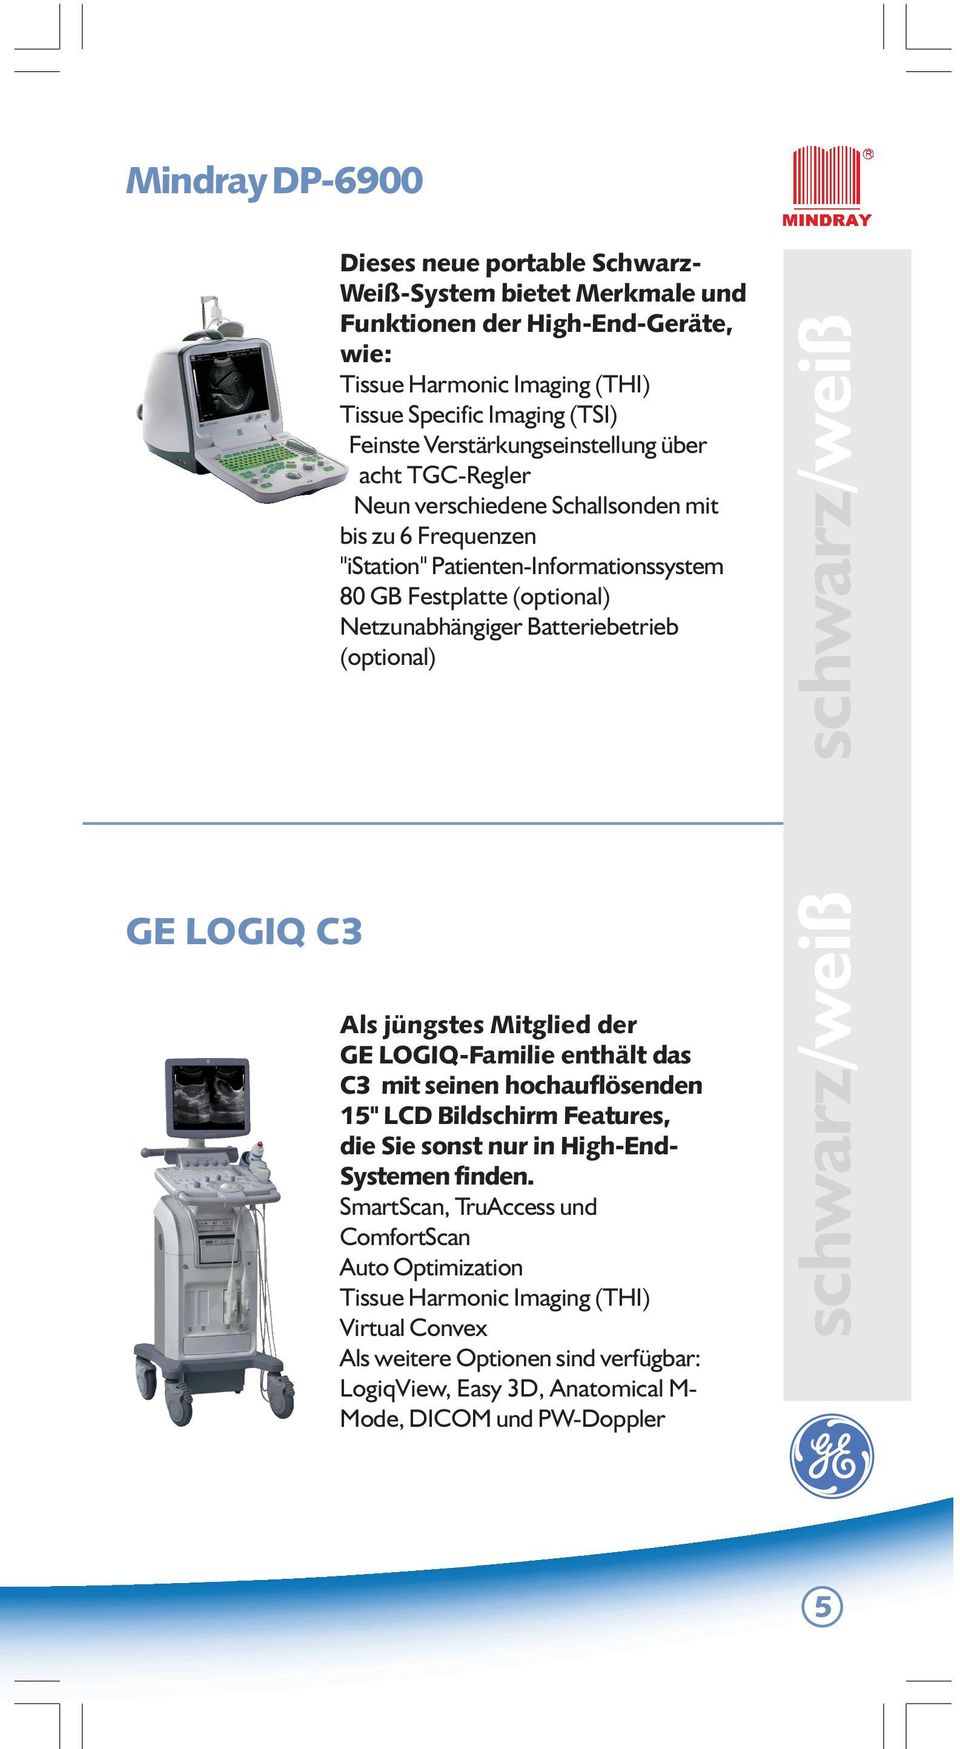 Batteriebetrieb (optional) schwarz/weiß GE LOGIQ C3 Als jüngstes Mitglied der GE LOGIQ-Familie enthält das C3 mit seinen hochauflösenden 15" LCD Bildschirm Features, die Sie sonst nur in High-End-